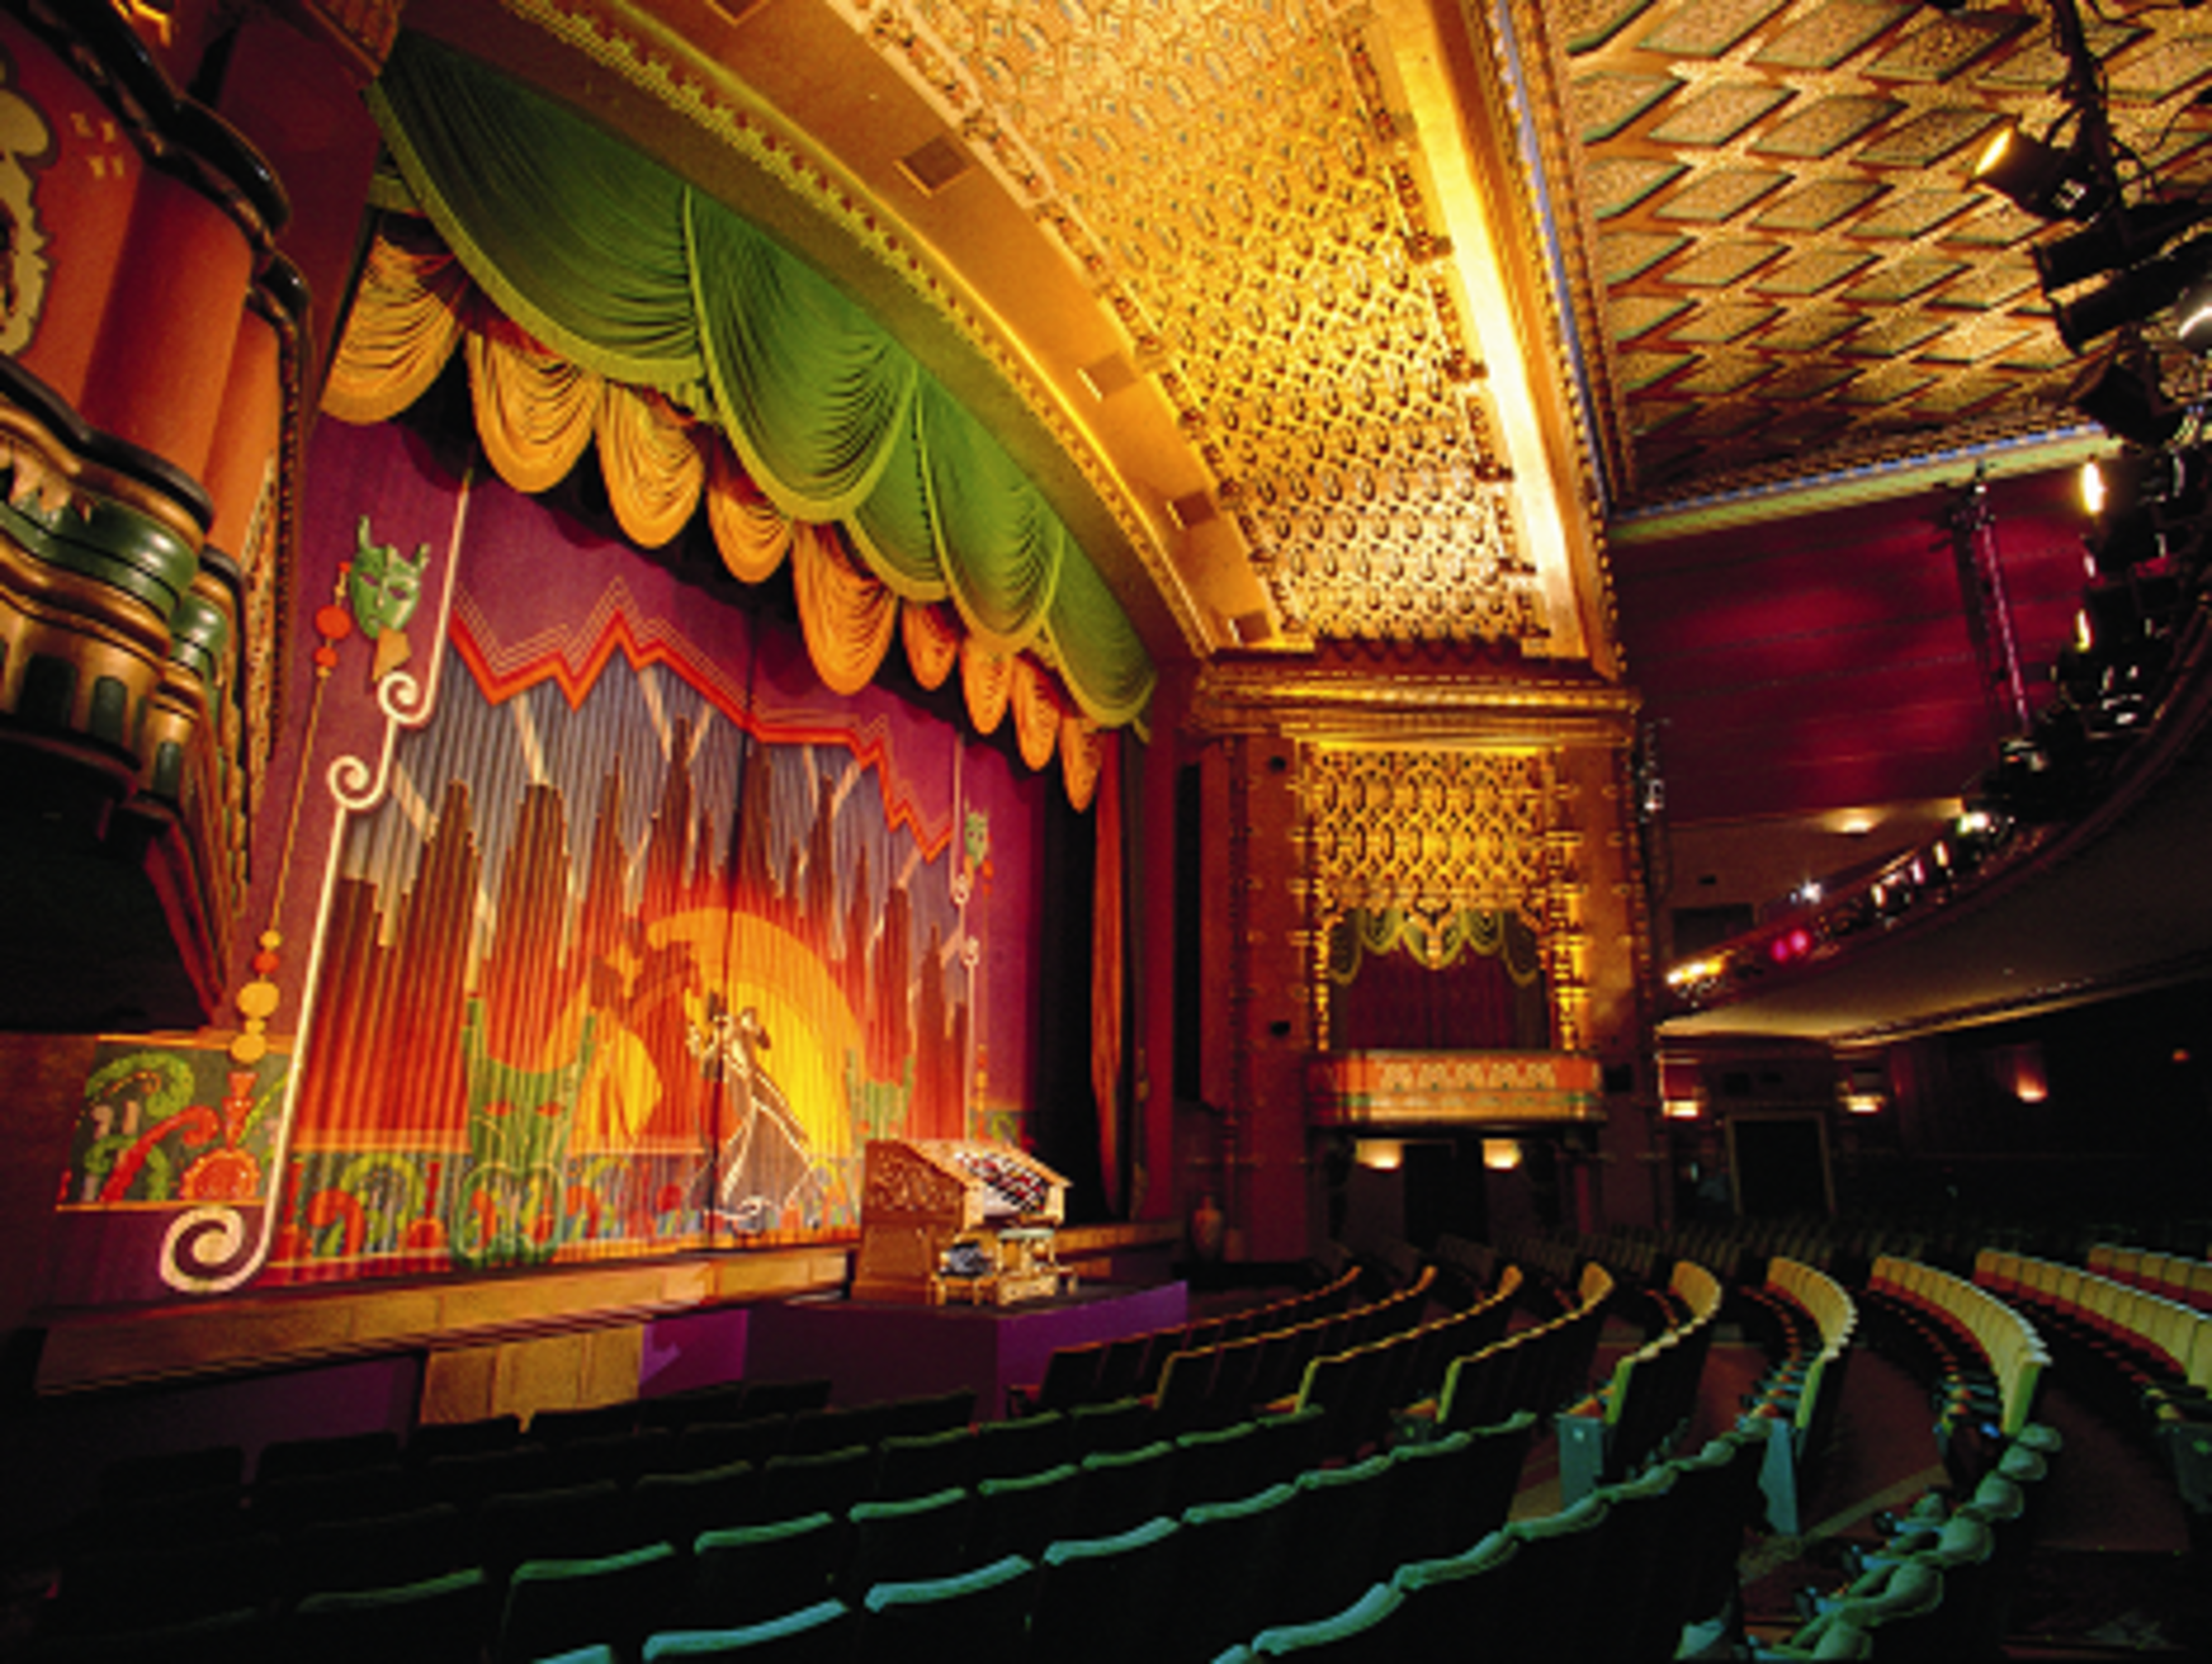 El Capitan Theatre | Discover Los Angeles